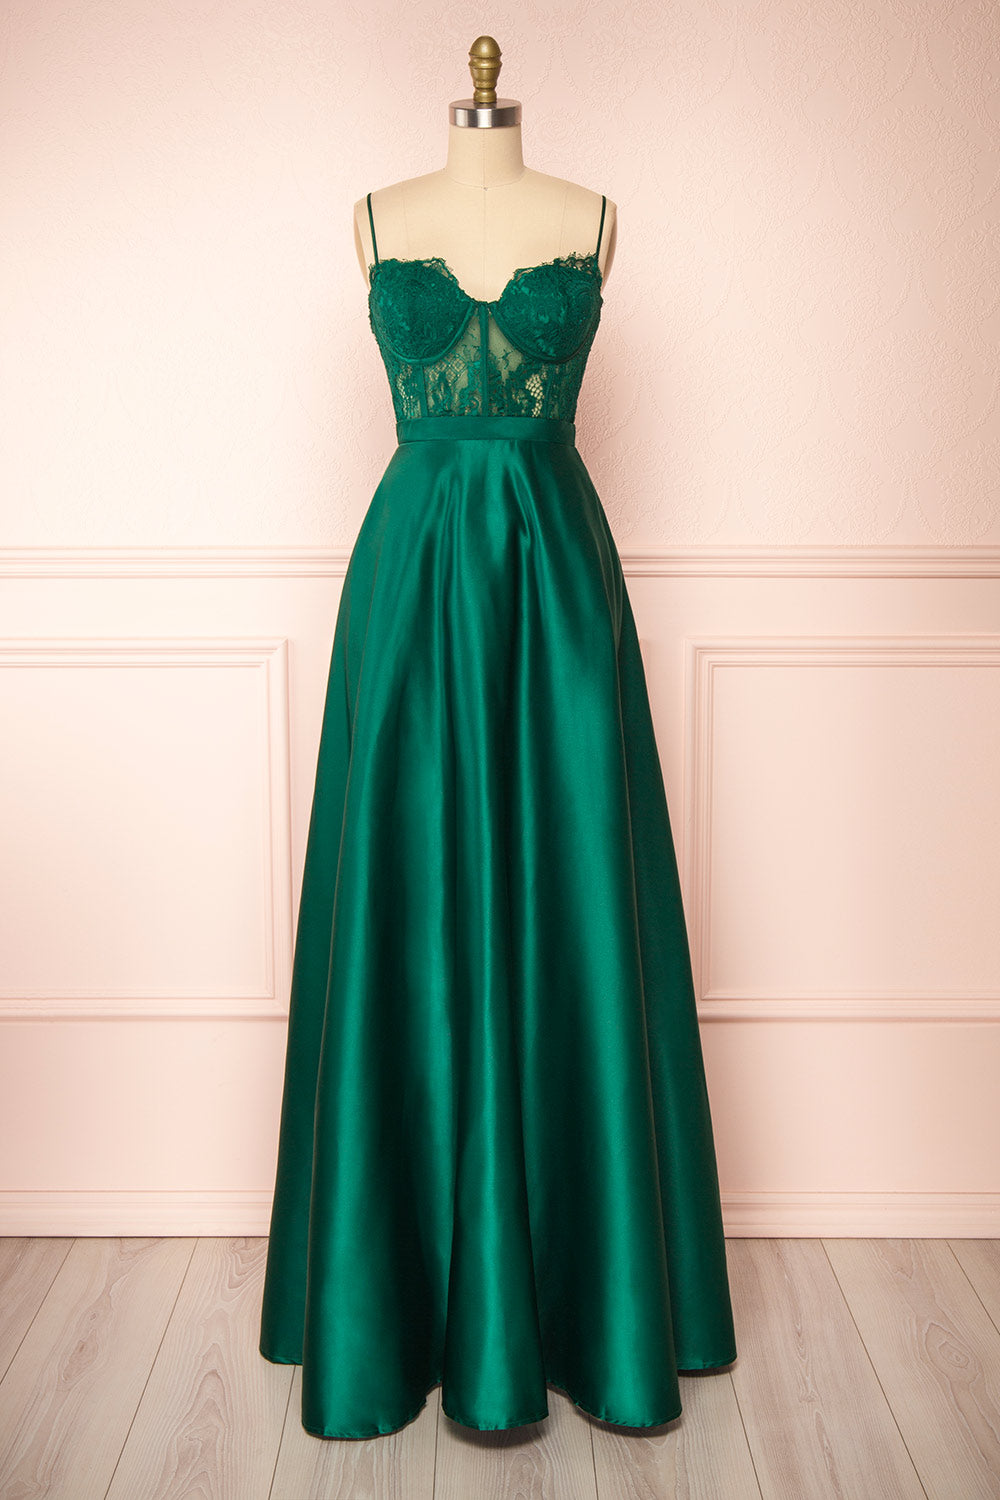 Geraldine Emerald Lace Bustier Maxi Dress | Boutique 1861 front view